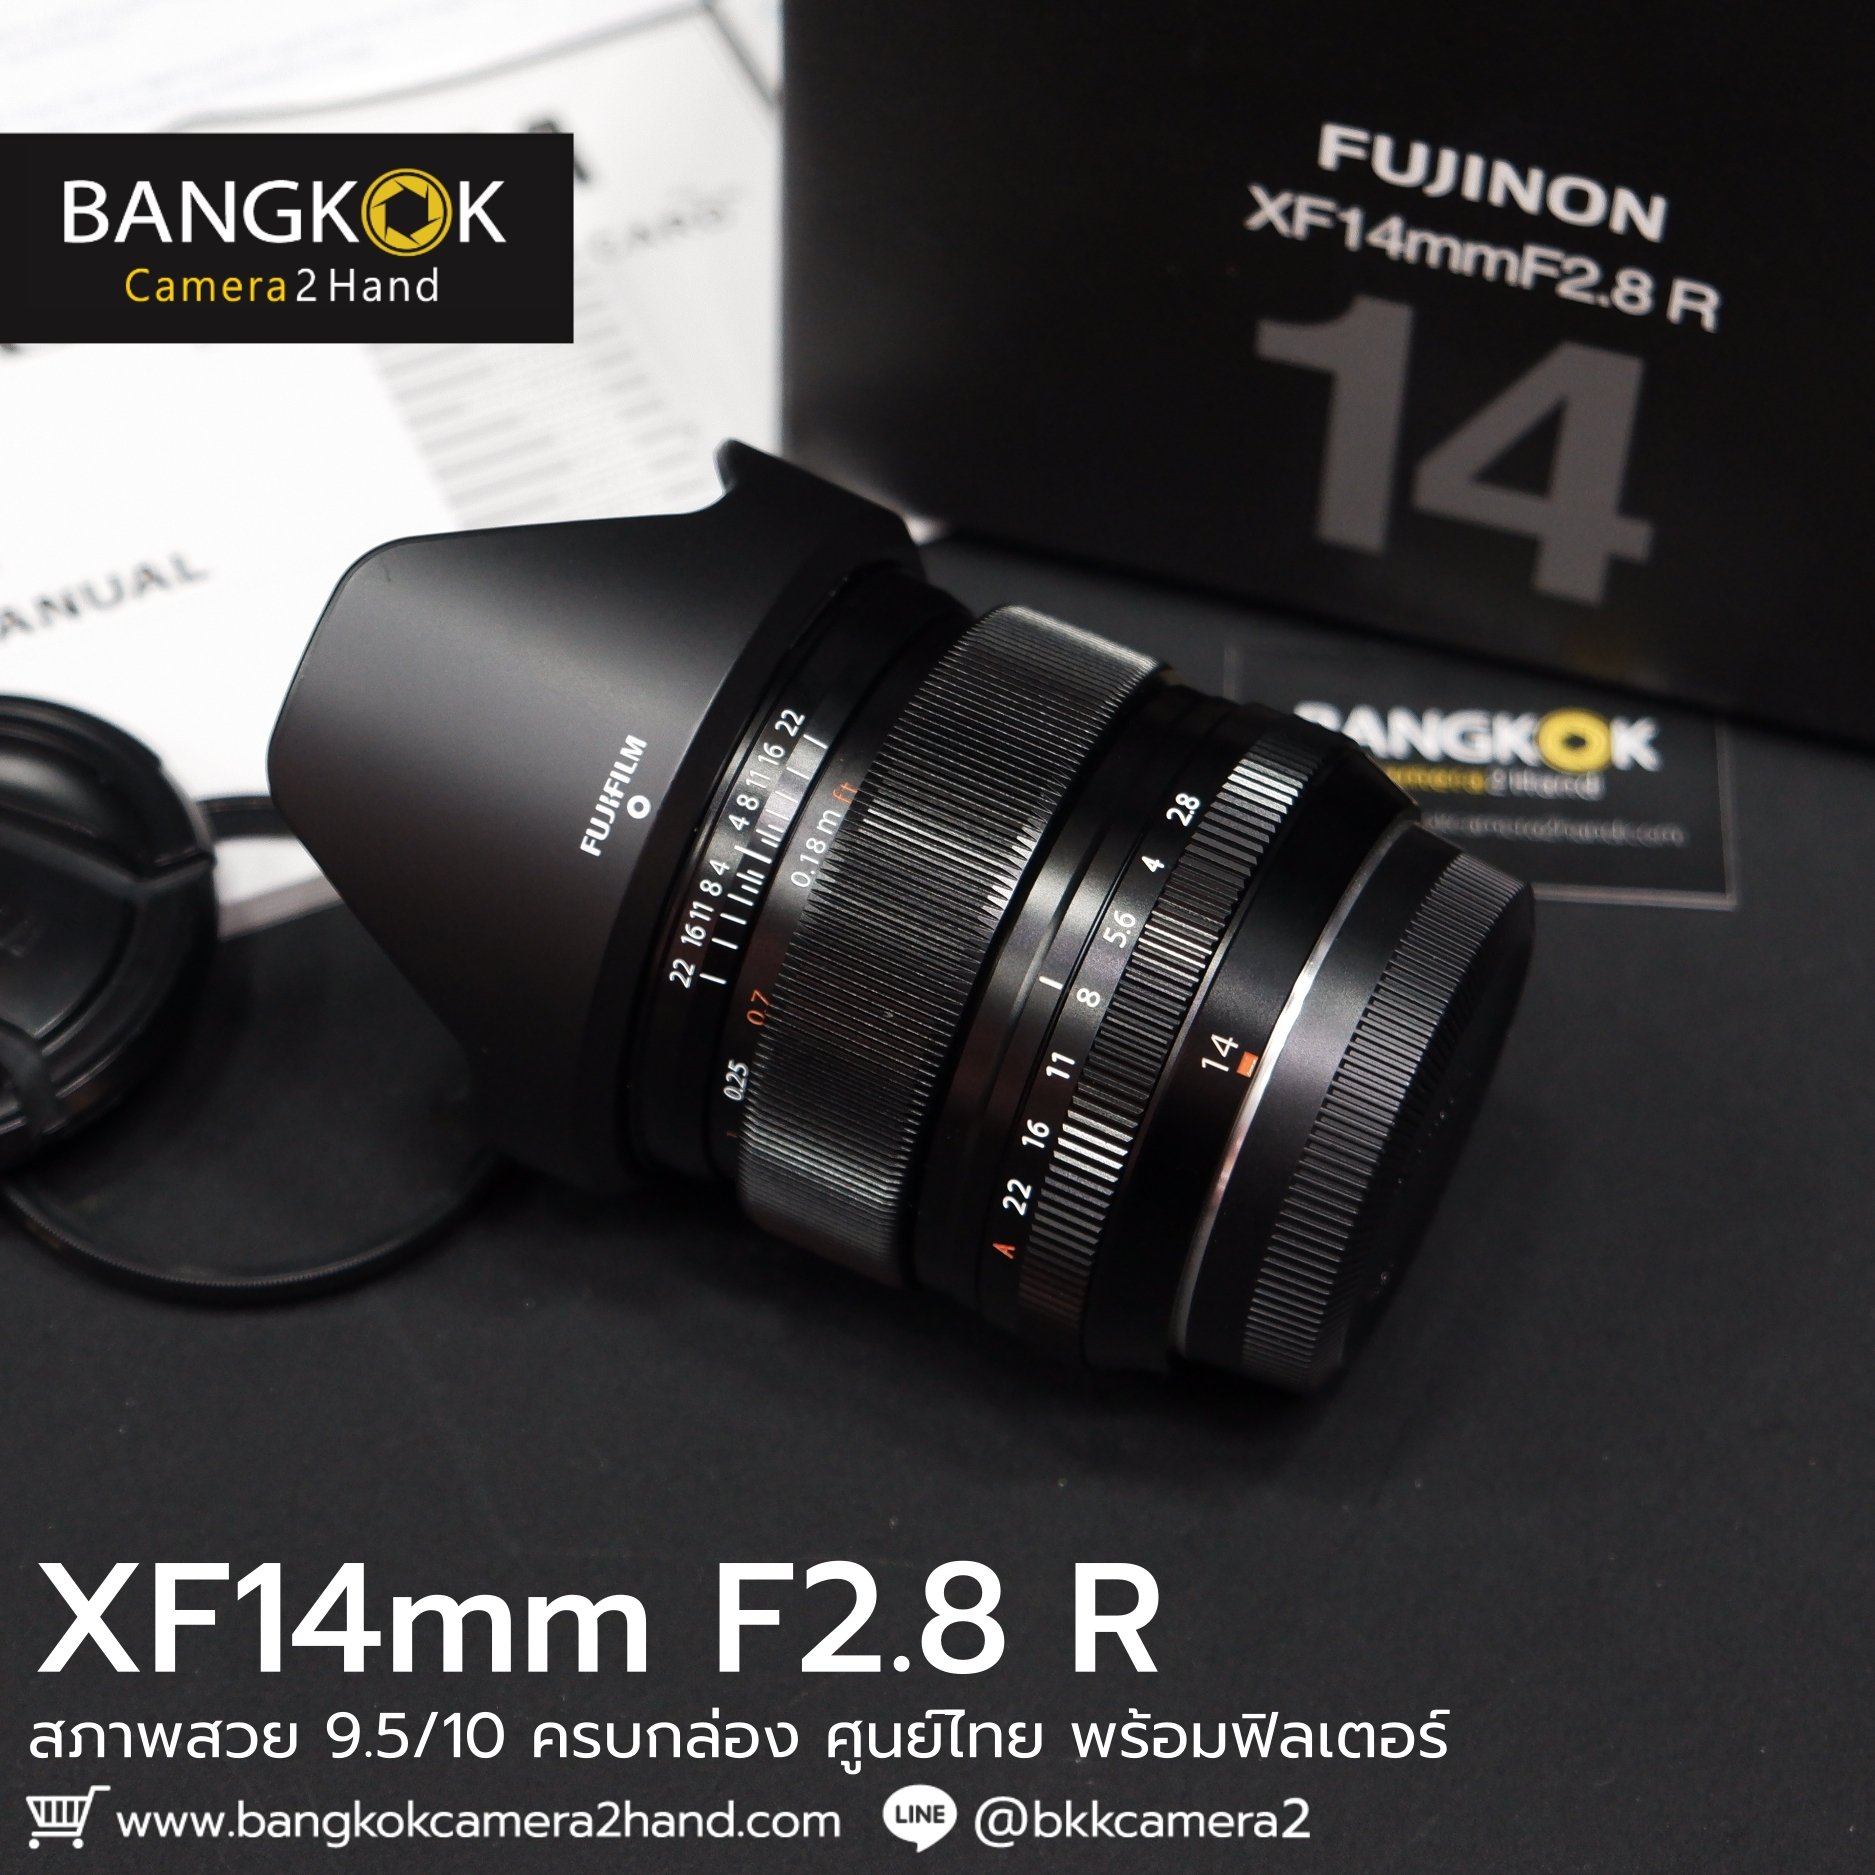 XF14mm F2.8 R ศูนย์ไทย พร้อมฟิลเตอร์